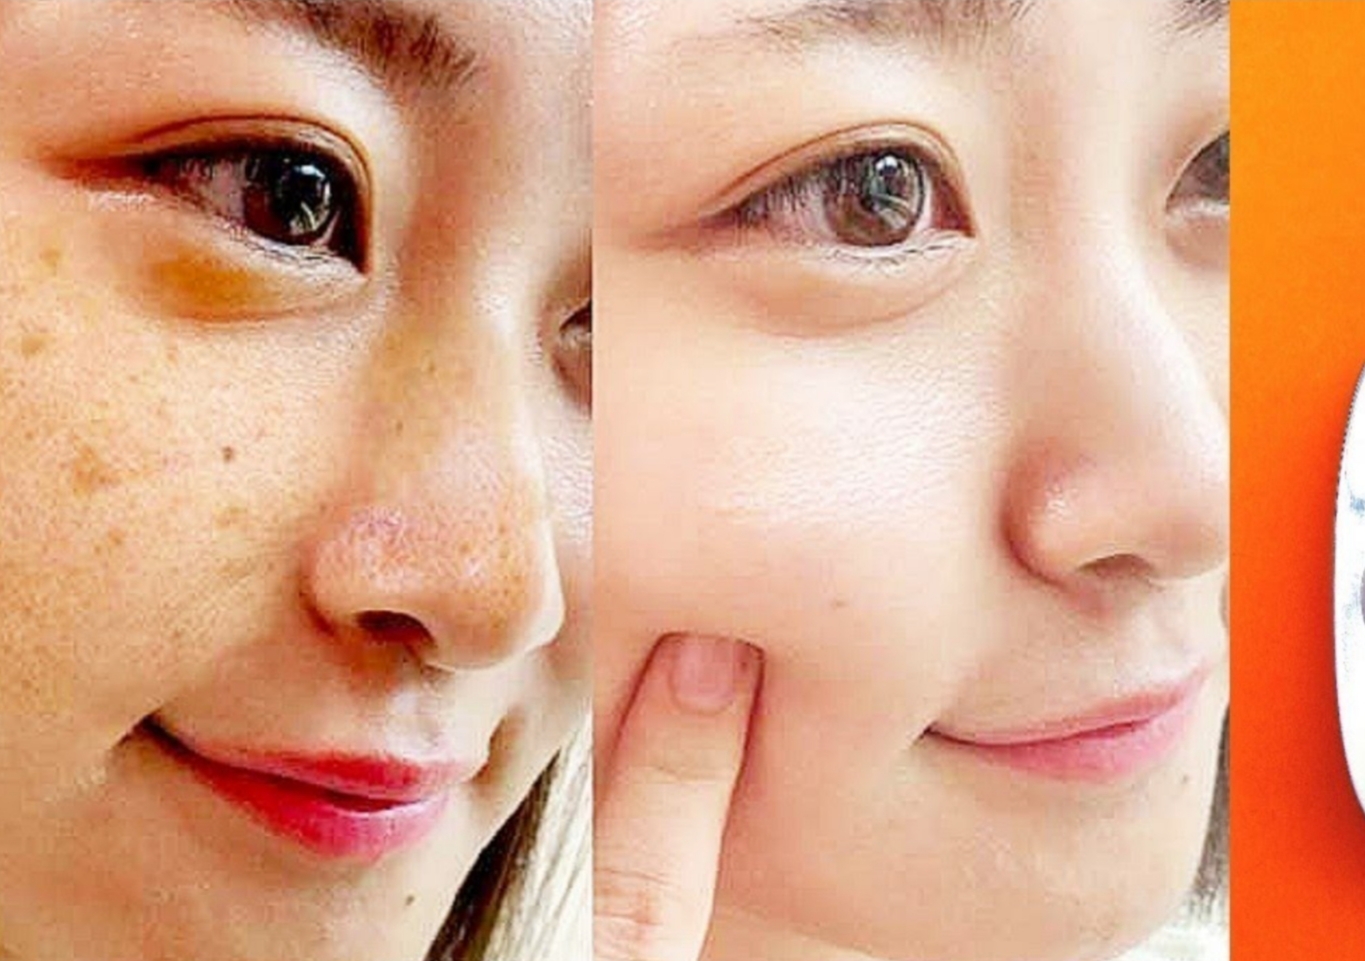 كيف تبيضين بشرة وجهك في ربع ساعة؟ قناع قوي بأقوى تأثير لتبييض الوجه والرقبة